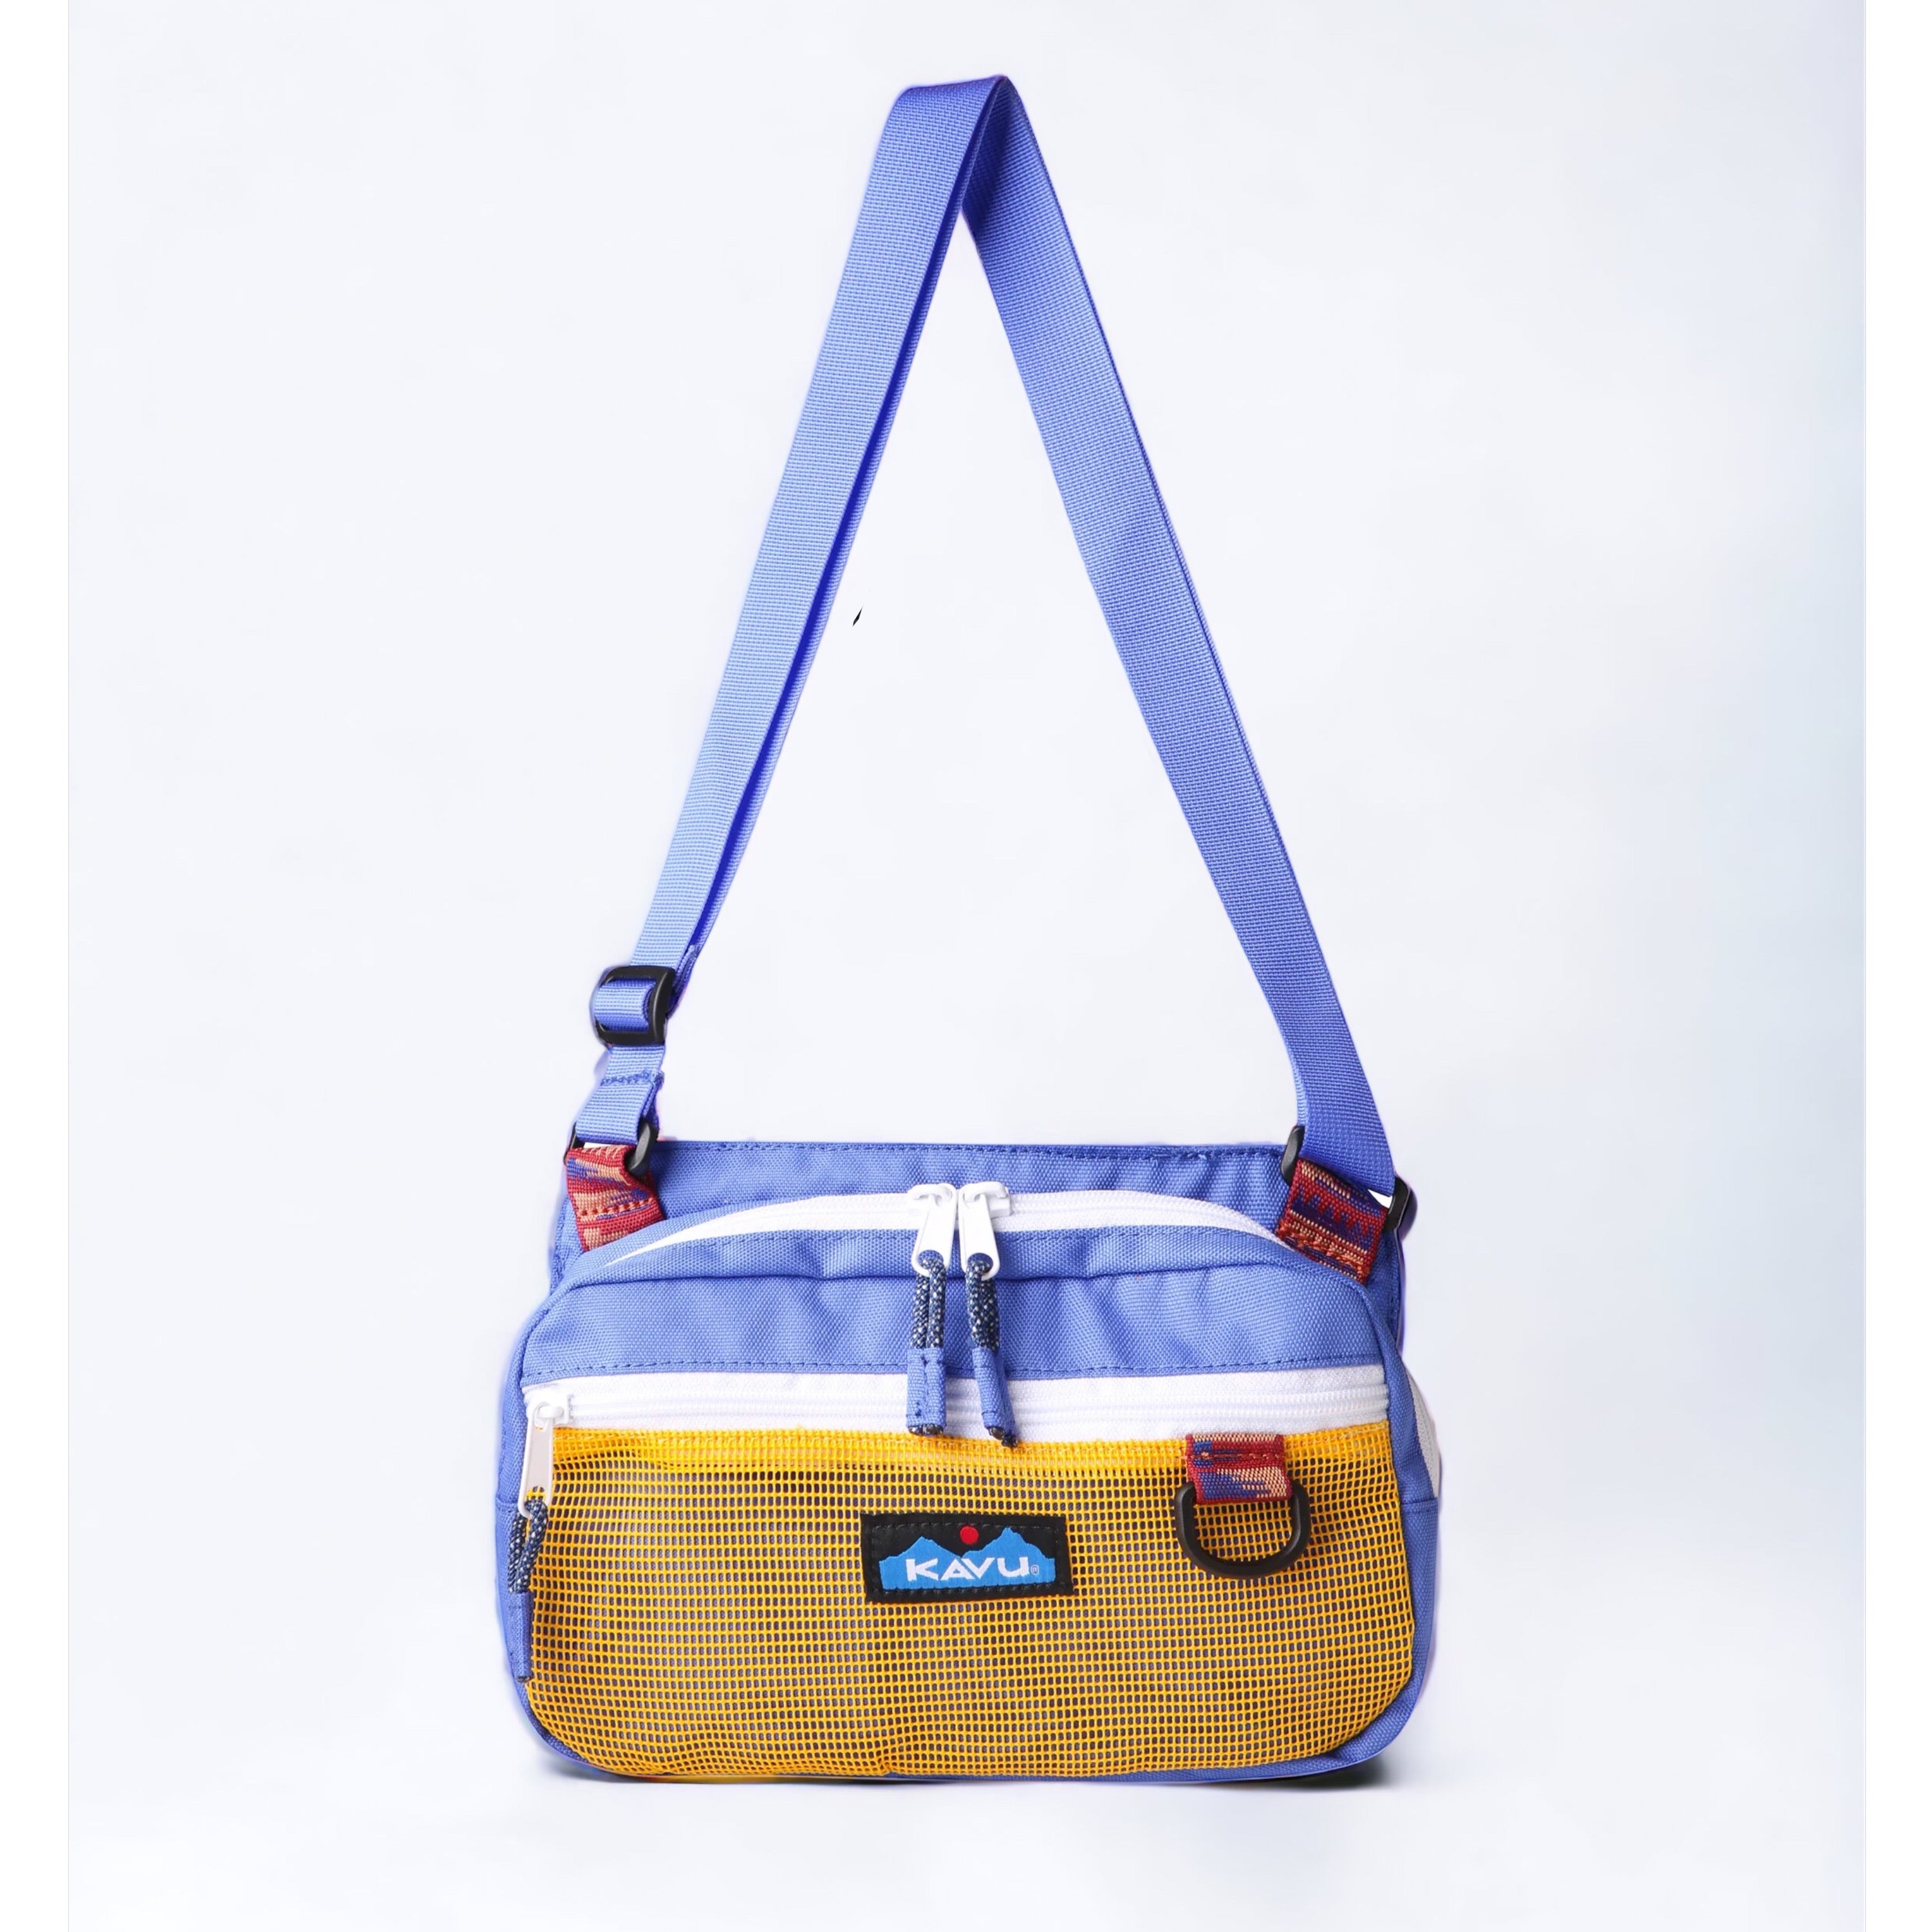 Kavu Delray Beach Bag - Ultramarine